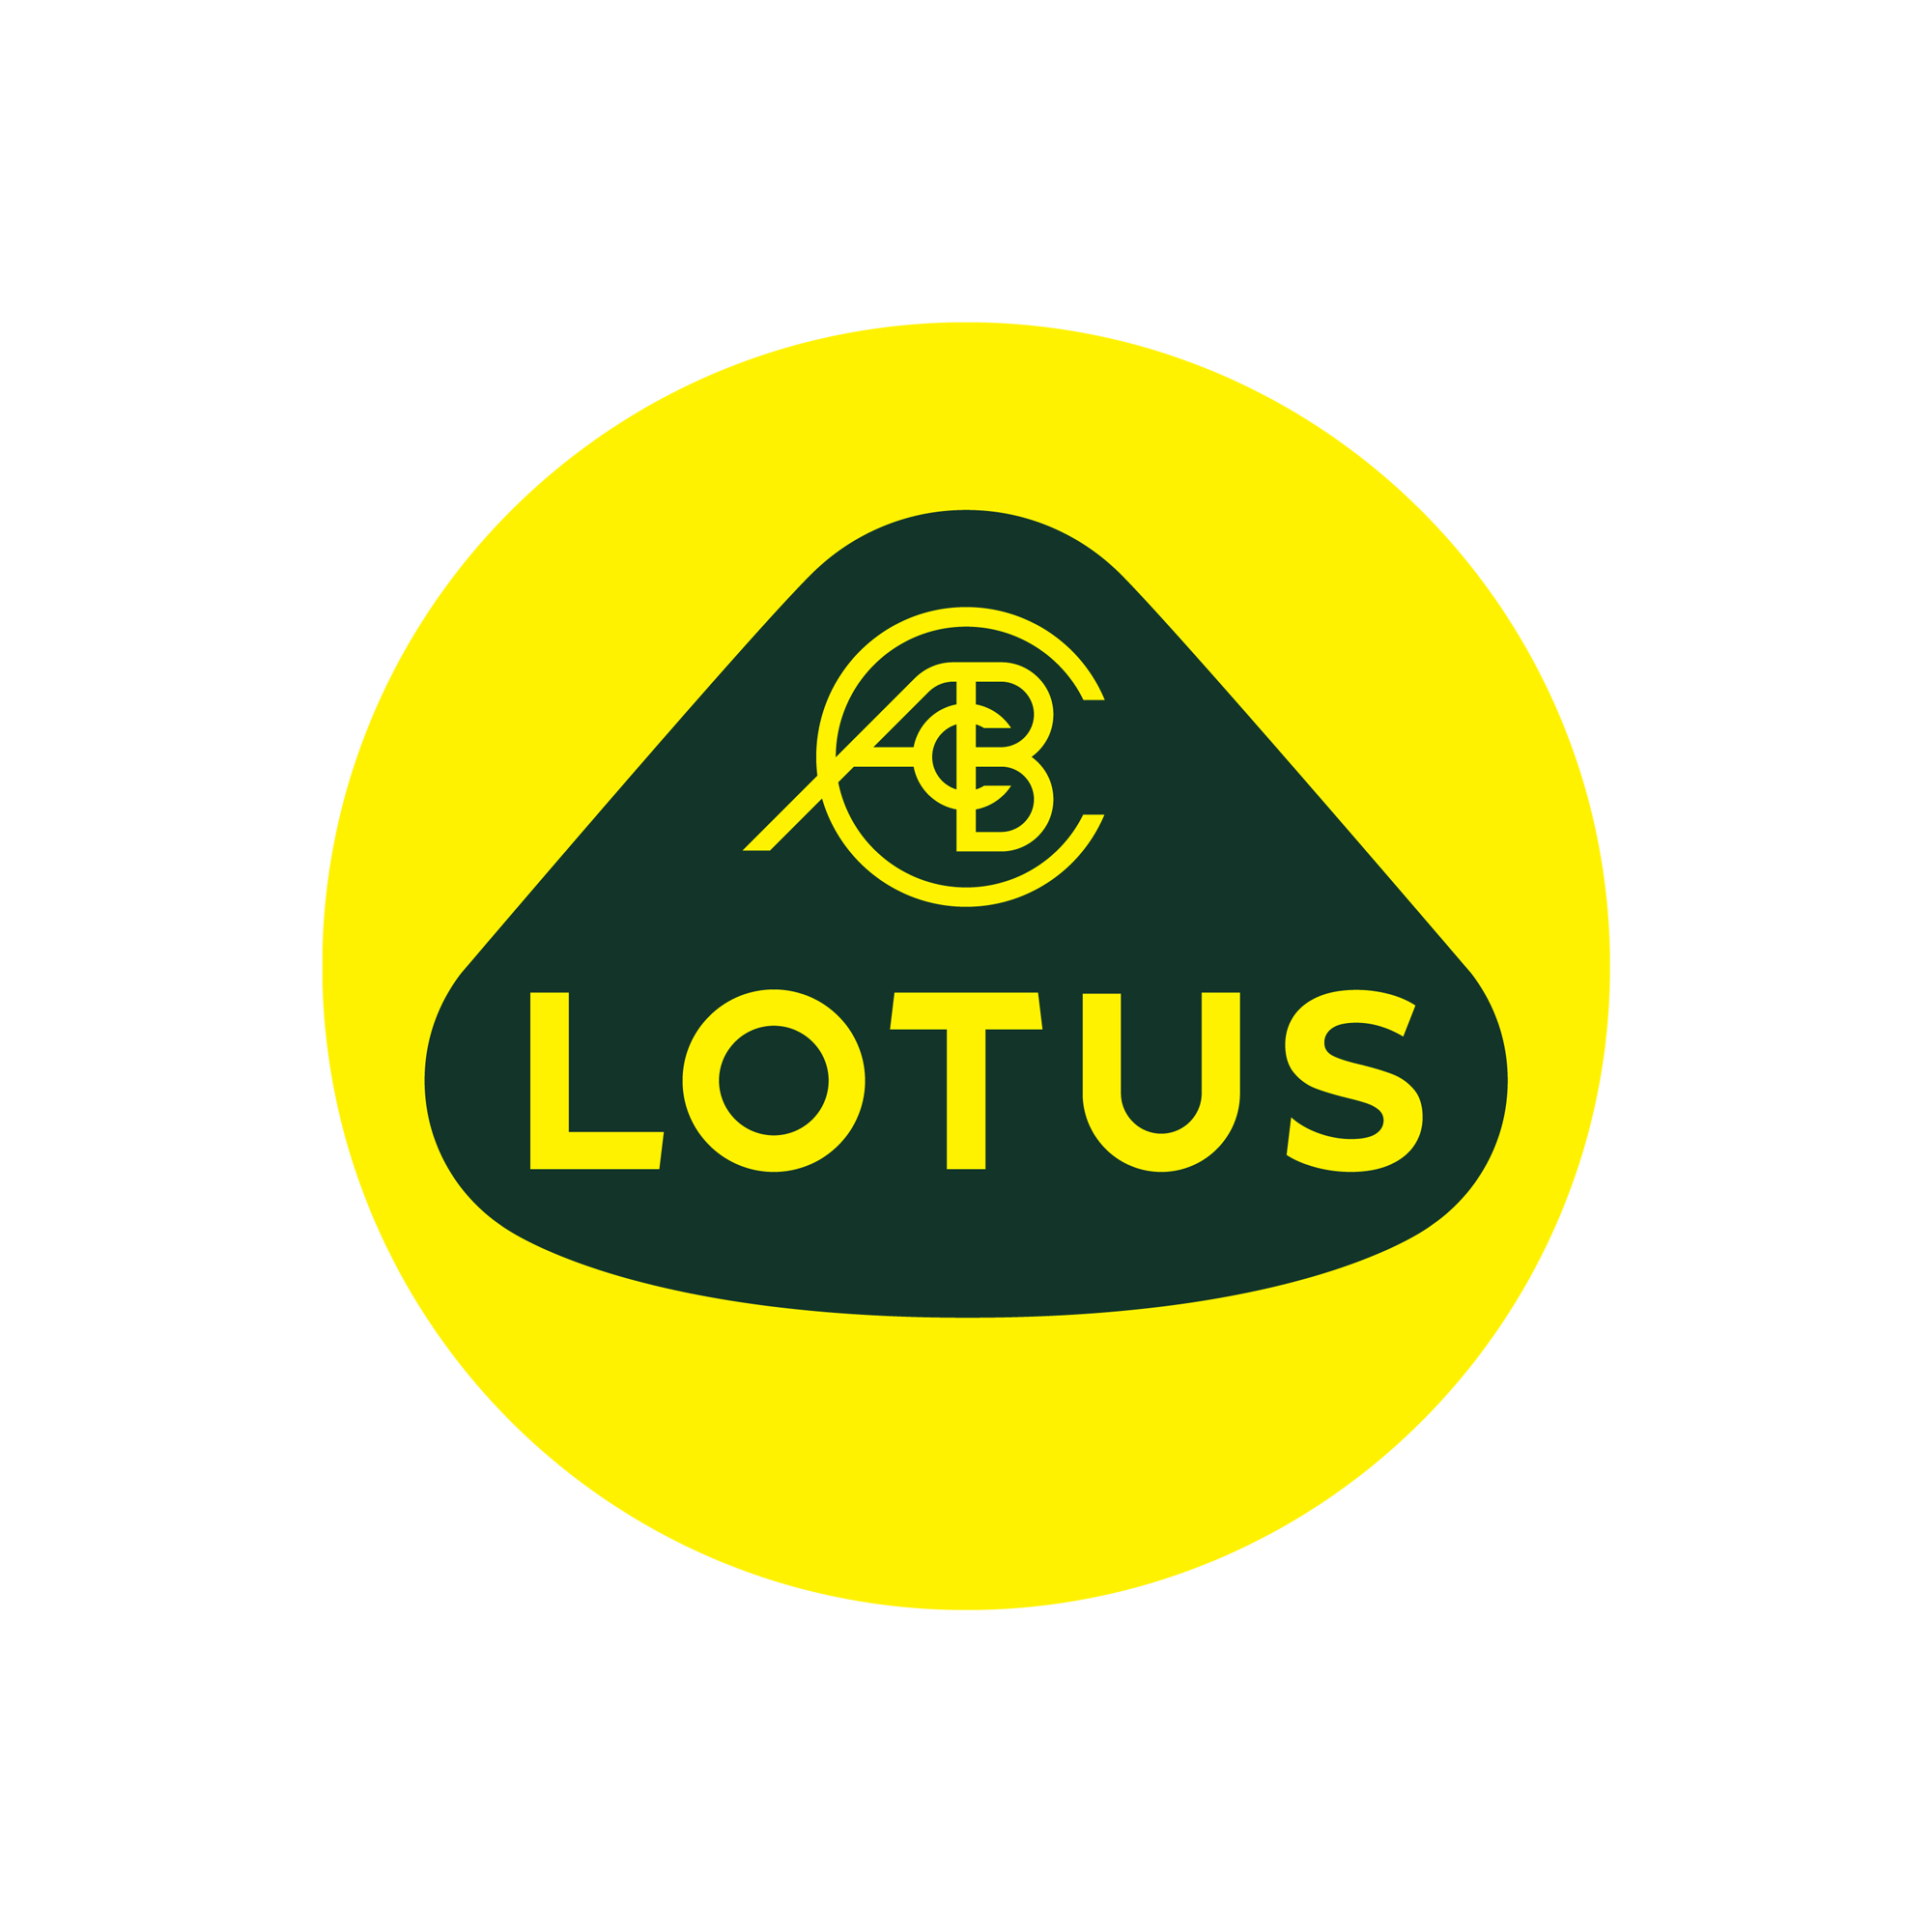 高性能跑车汽车品牌Lotus标识logo设计